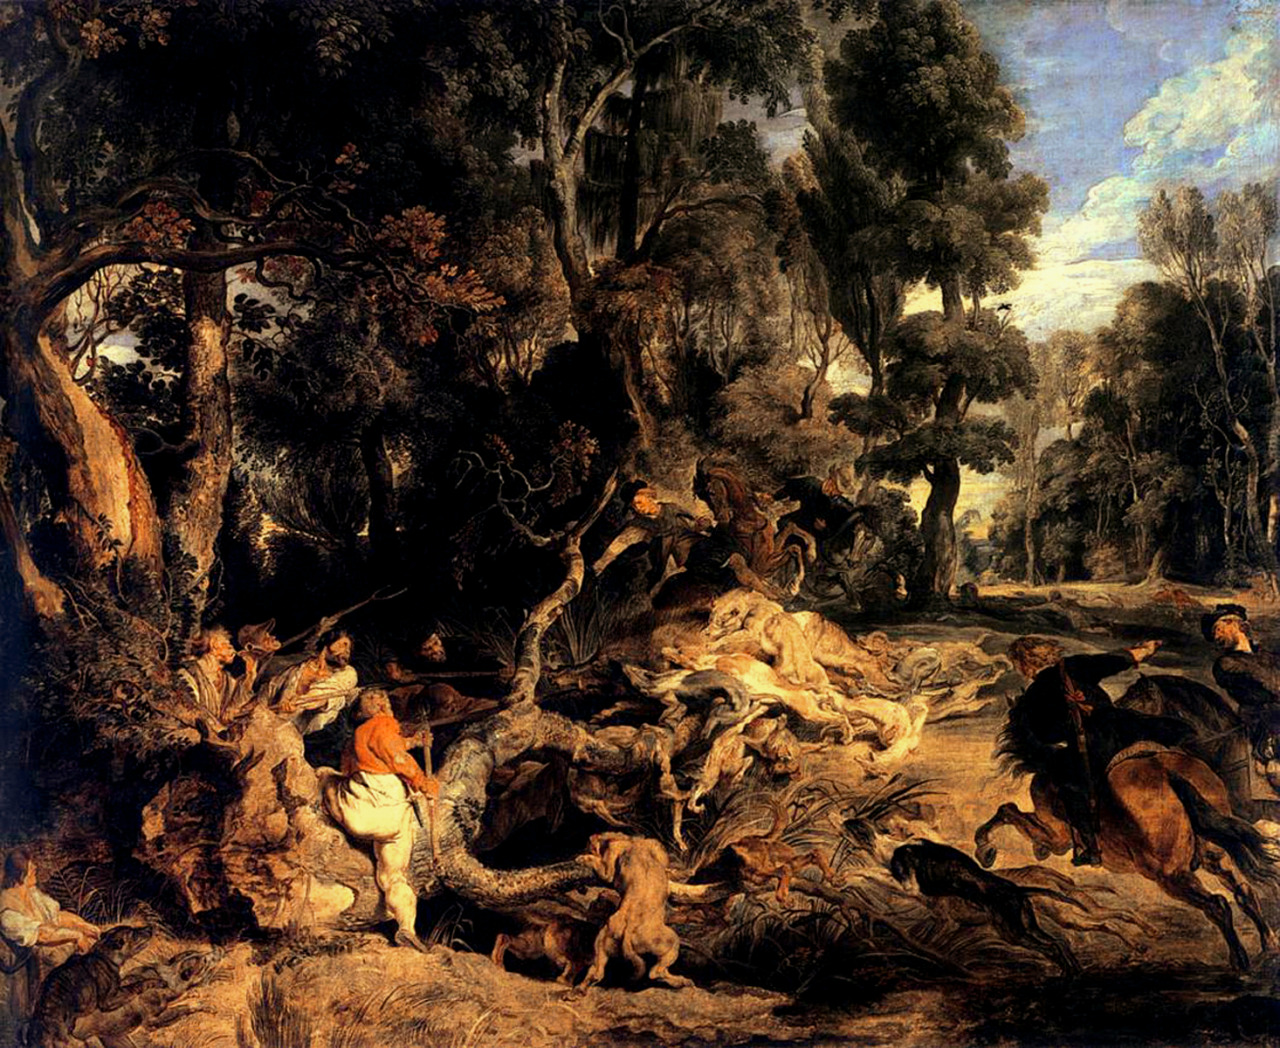 Pieter Paul Rubens (Siegen 1577 - Antwerp 1640); Wild-Boar Hunt, 1618-20; oil on